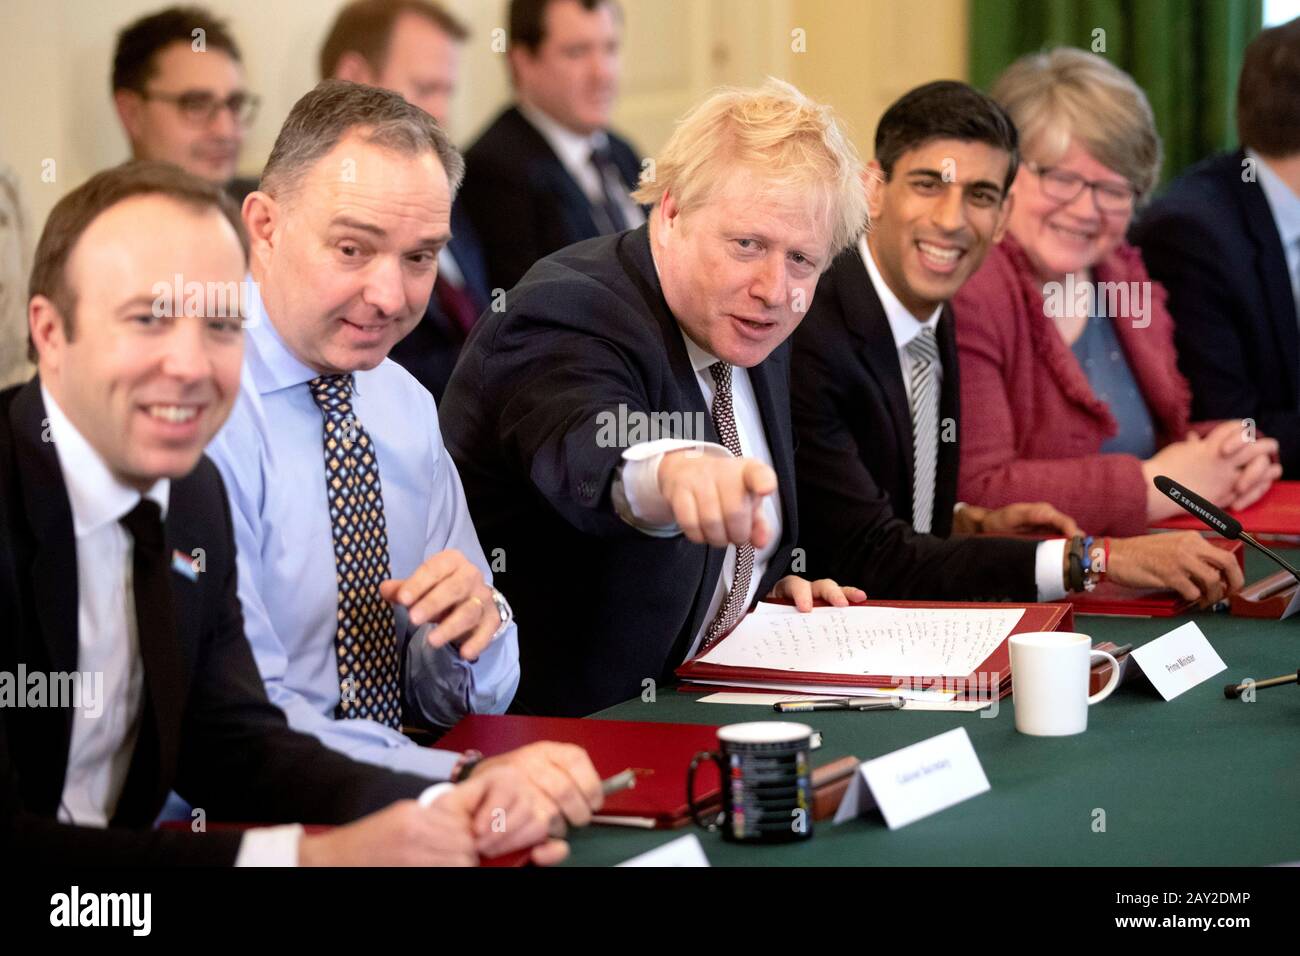 Il primo Ministro Boris Johnson (centro), accanto al nuovo Cancelliere dello scacchiere Rishi Sunak (seconda a destra), il Segretario del Gabinetto Mark Sedwill (seconda a sinistra), il Segretario Del Lavoro e delle pensioni Therese Coffey (destra) e il Segretario della Sanità Matt Hancock (sinistra) durante la prima riunione del Gabinetto al 10 Downing Street, Londra, dal rimpasto. Foto Stock